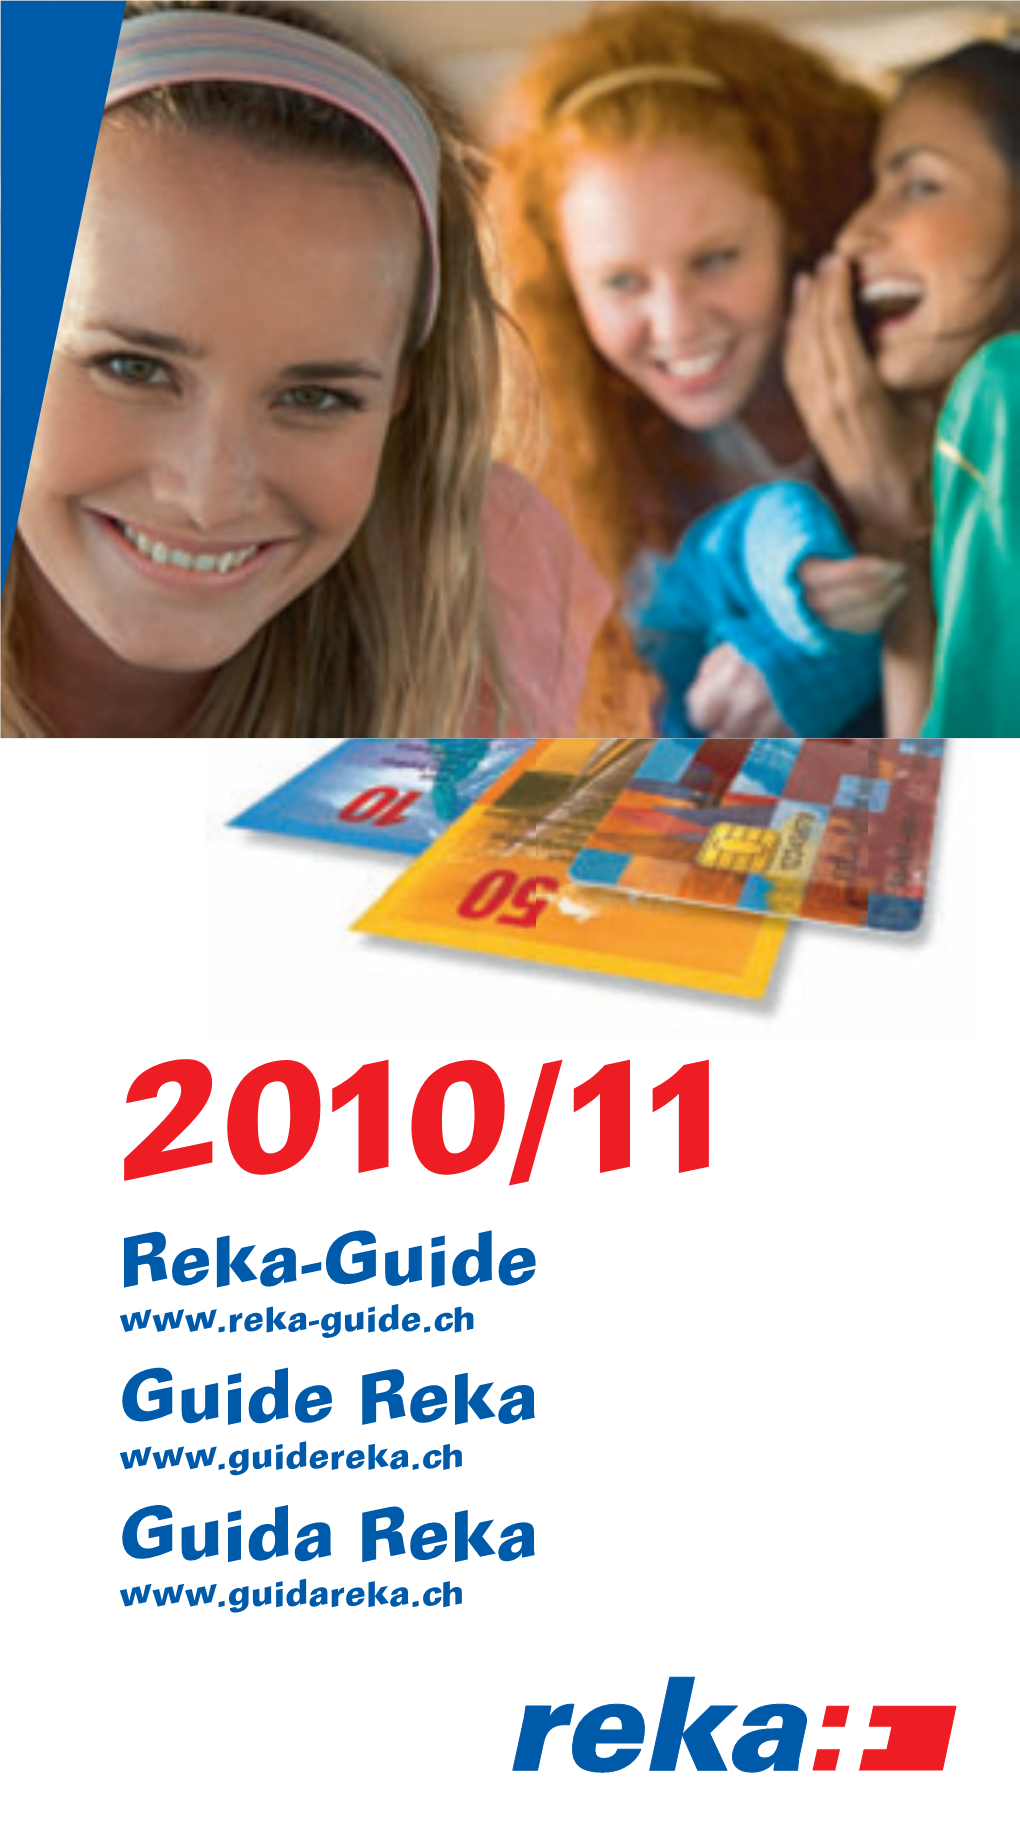 Reka-Guide Guide Reka Guida Reka